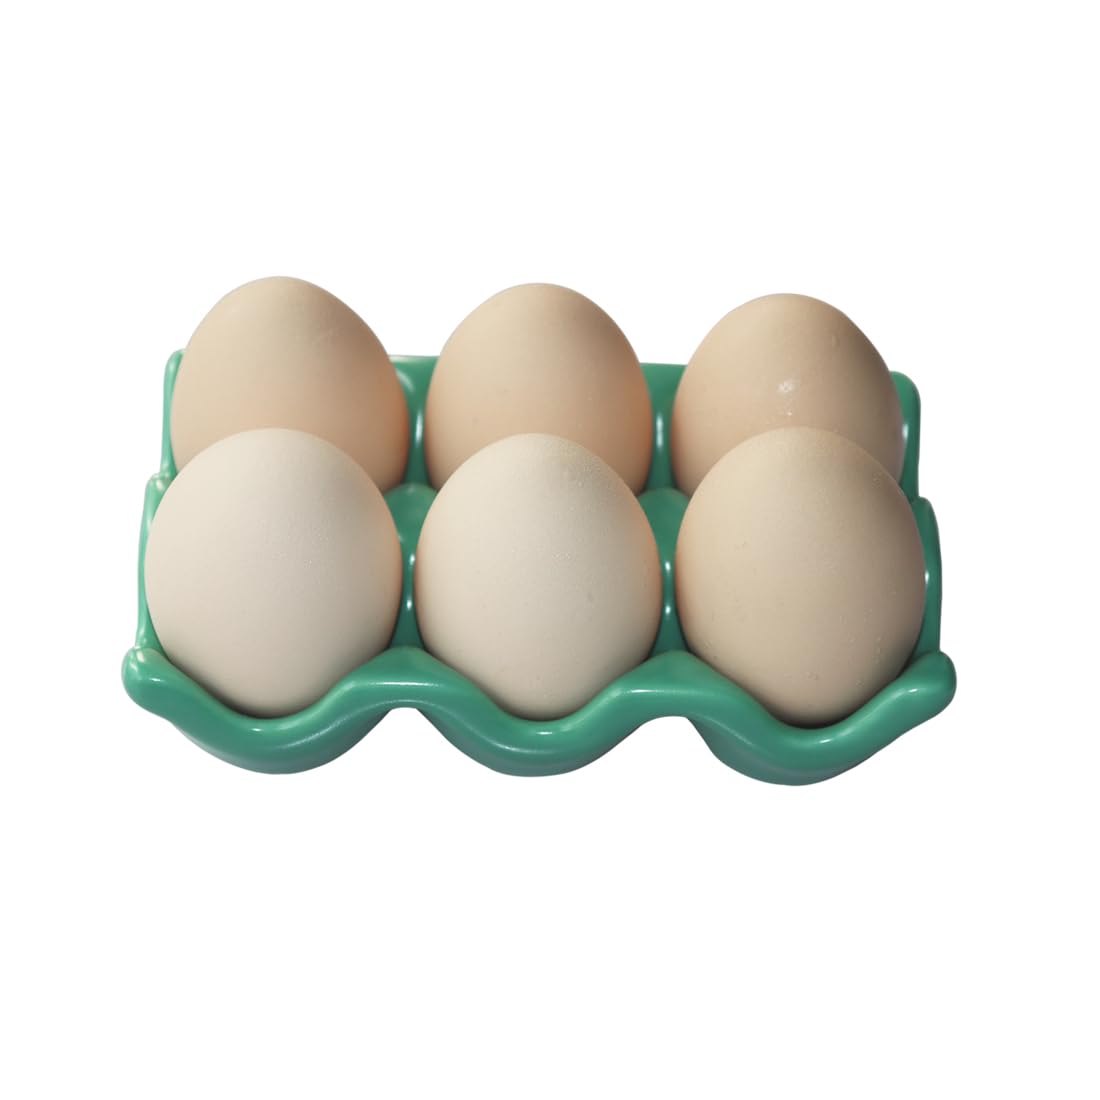 Bealuffe Ceramic Egg Holder Egg Tray Porcelain Fresh Egg Holder for Fridge Countertop Kitchen Storage Half Dozen 6 Cups